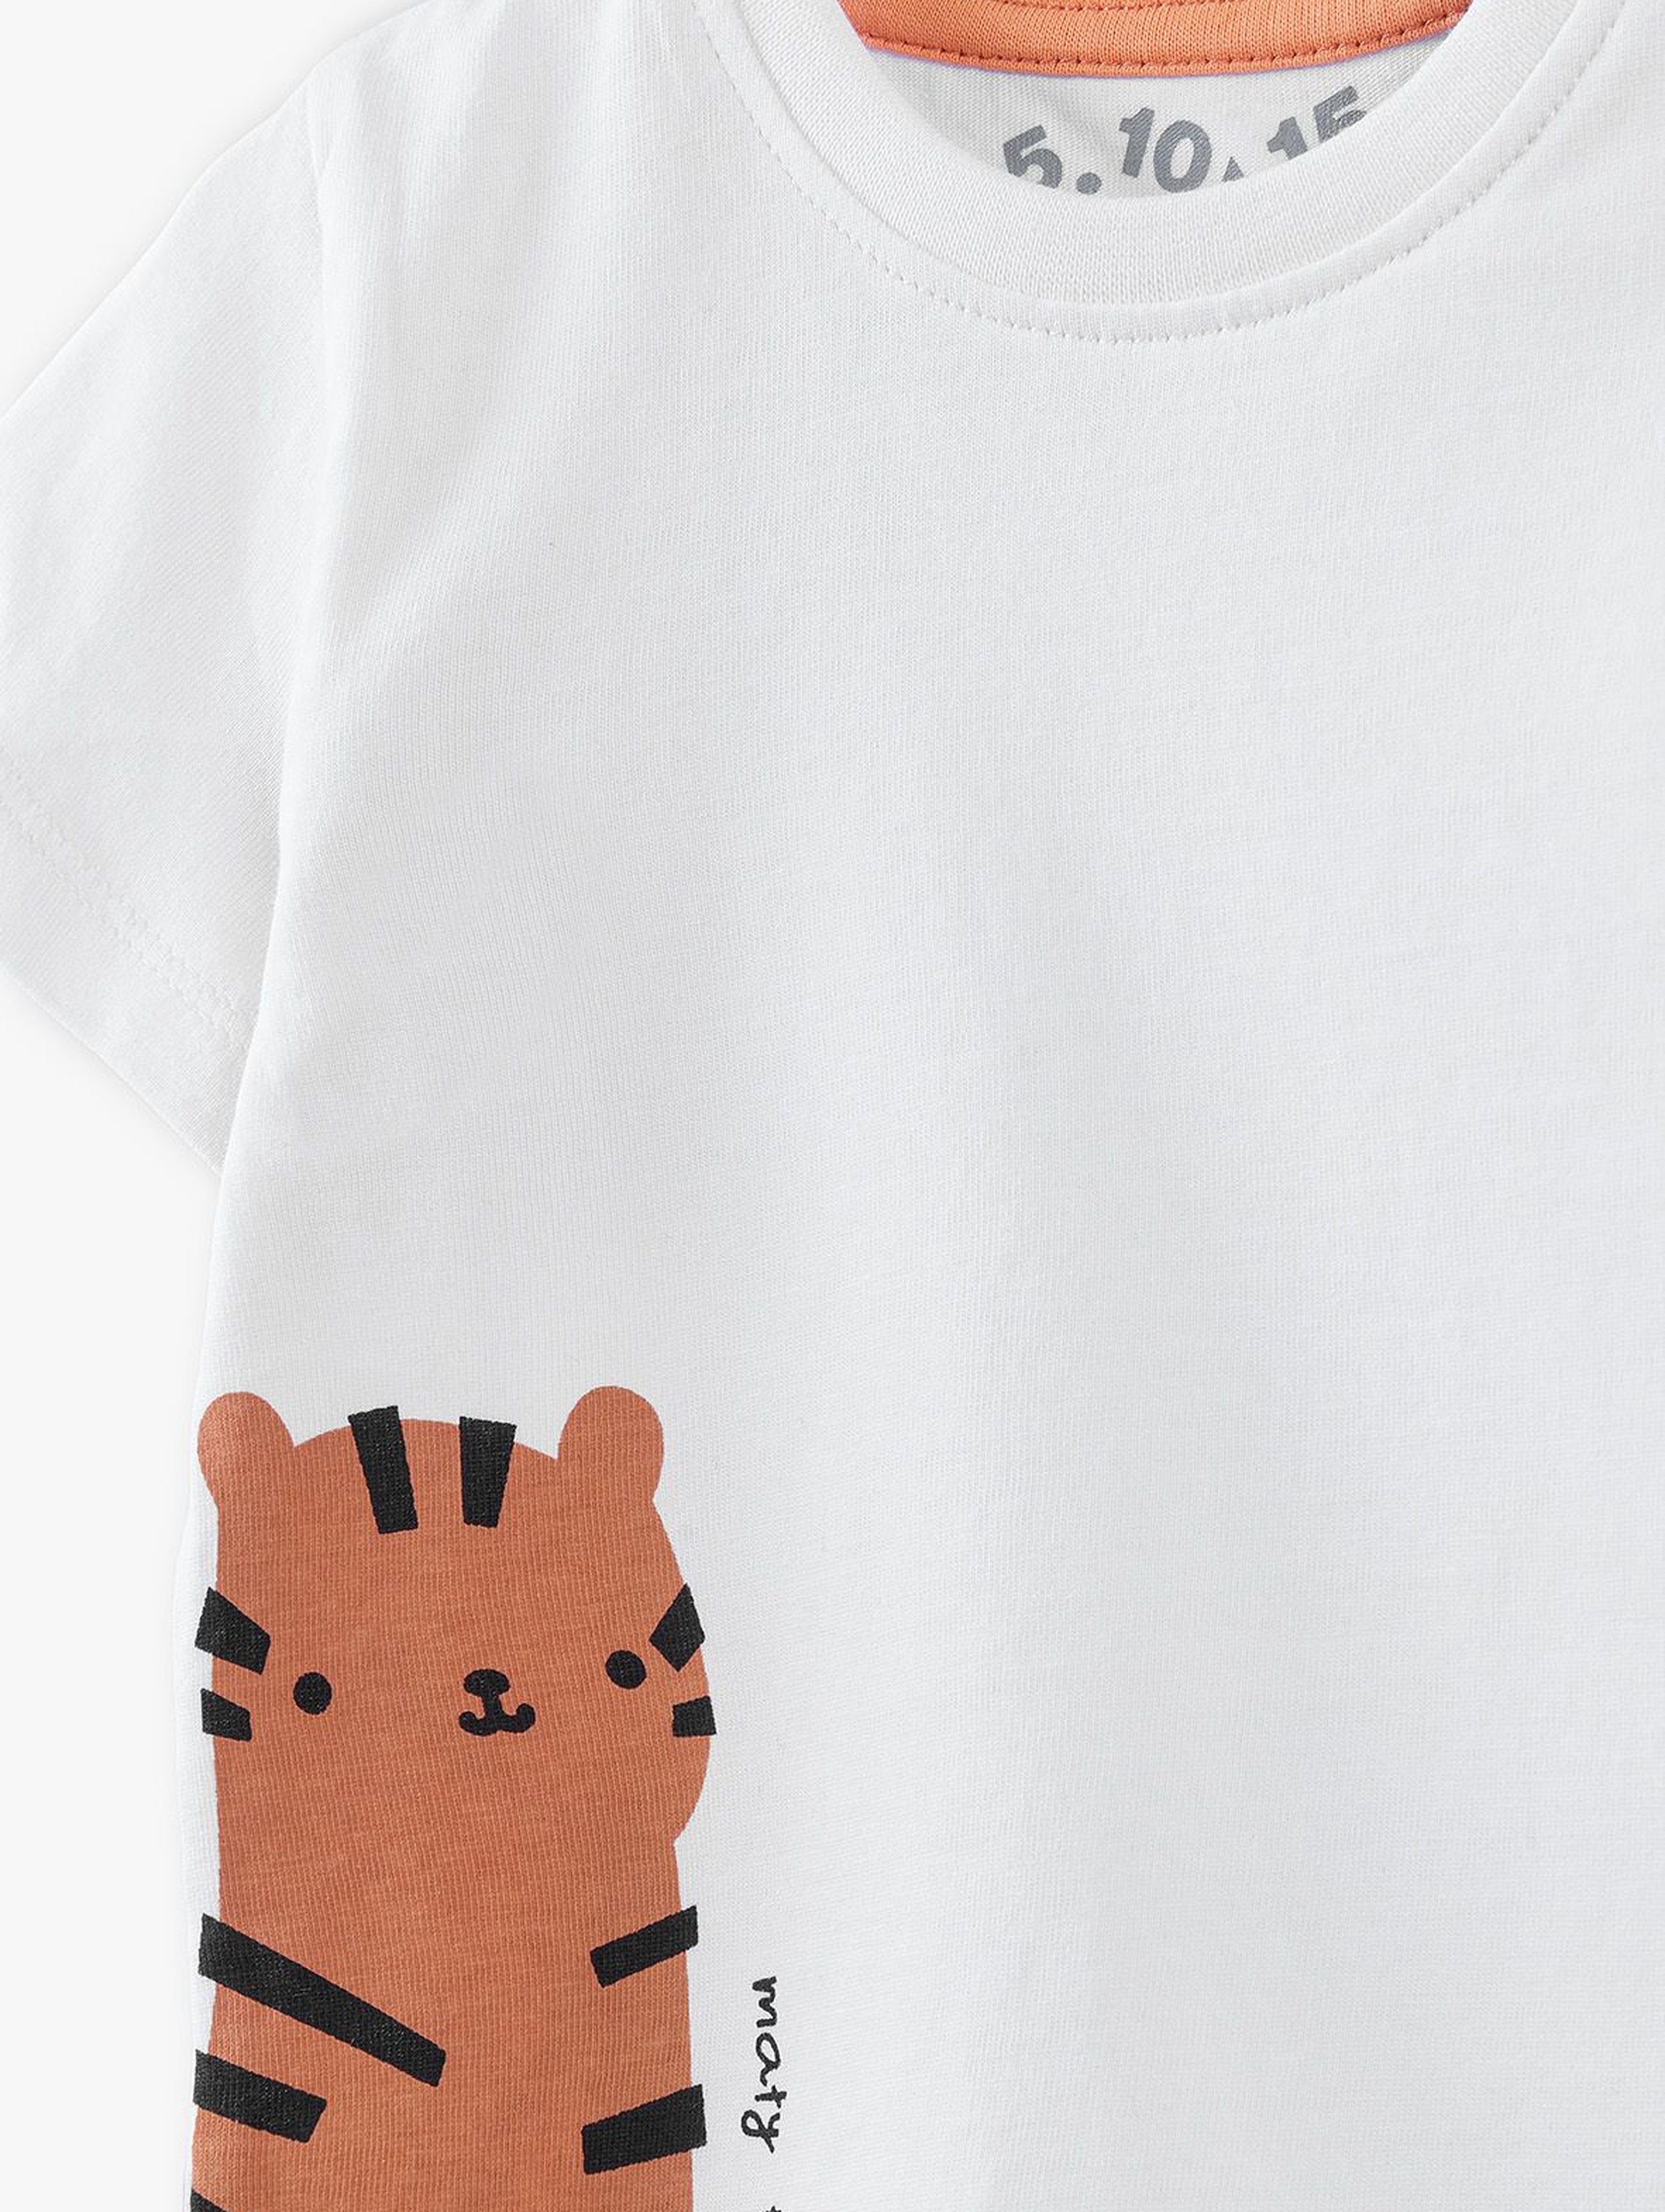 Komplet niemowlęcy T-shirt i spodenki z tygrysem